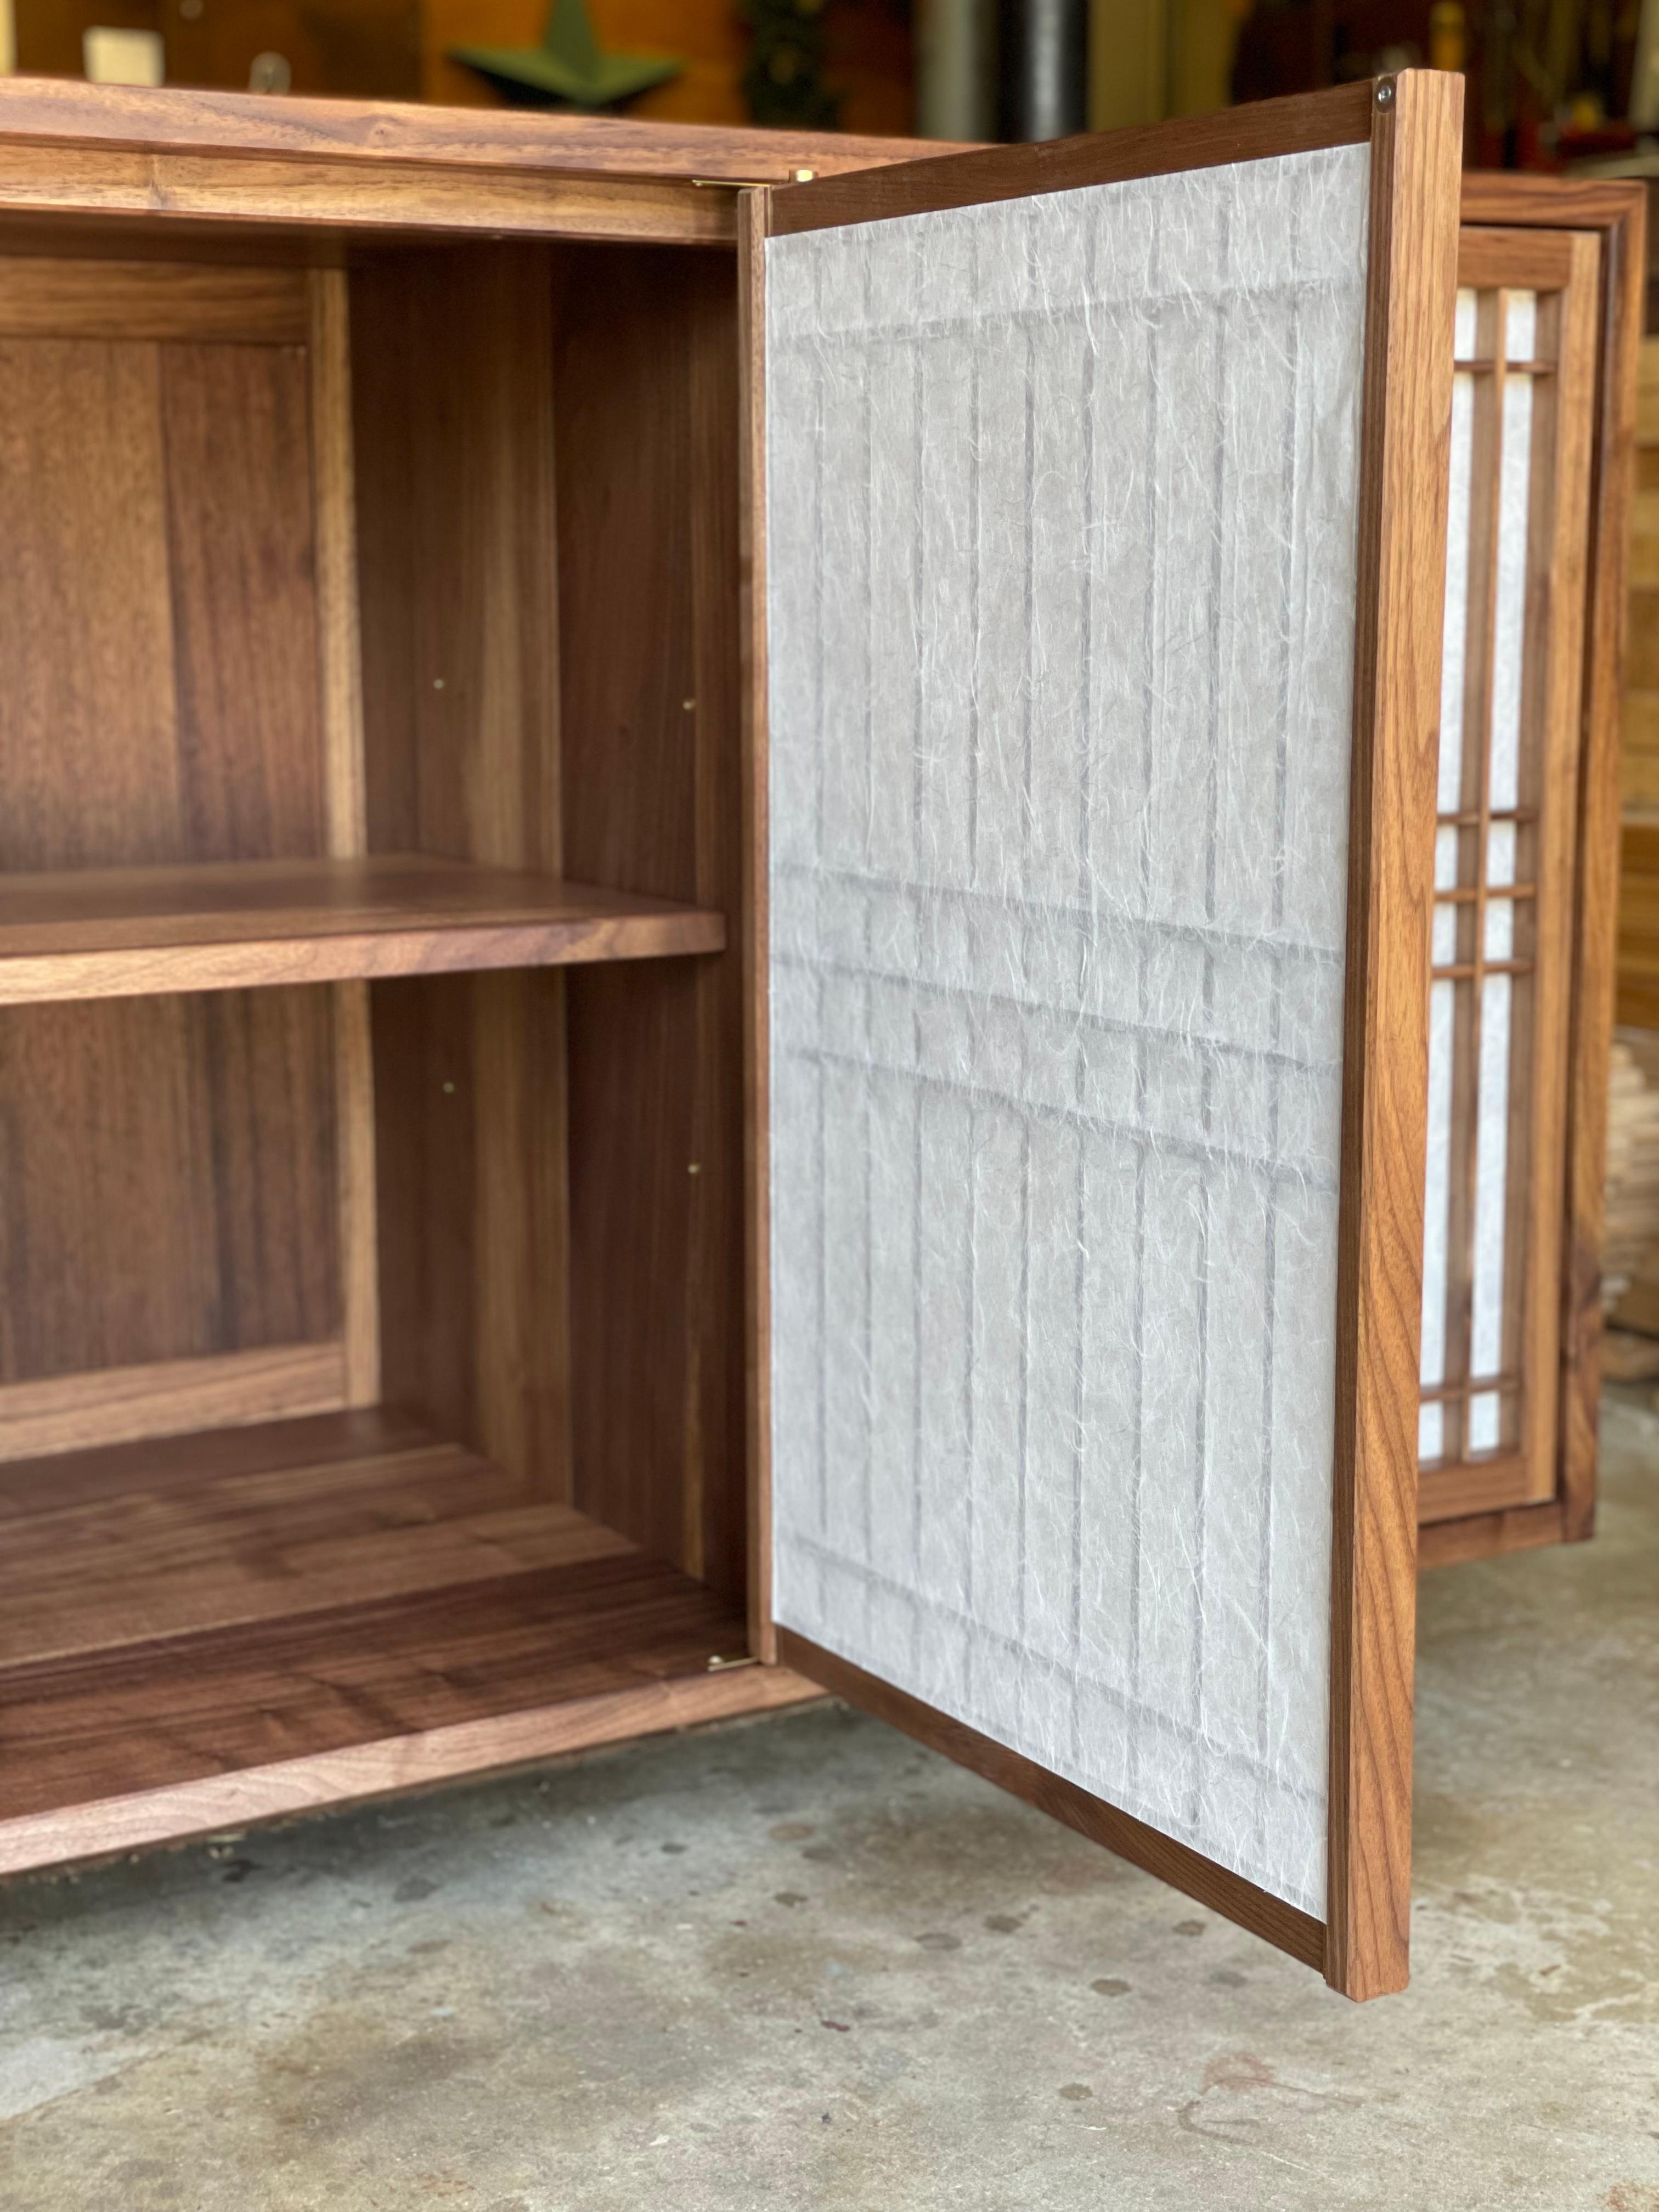 Armoire en noyer fabriquée à la main et comportant des portes et des étagères shoji. Ce meuble est construit en utilisant les techniques de menuiserie traditionnelles utilisées dans la menuiserie des temples japonais. Il comporte également des shoji